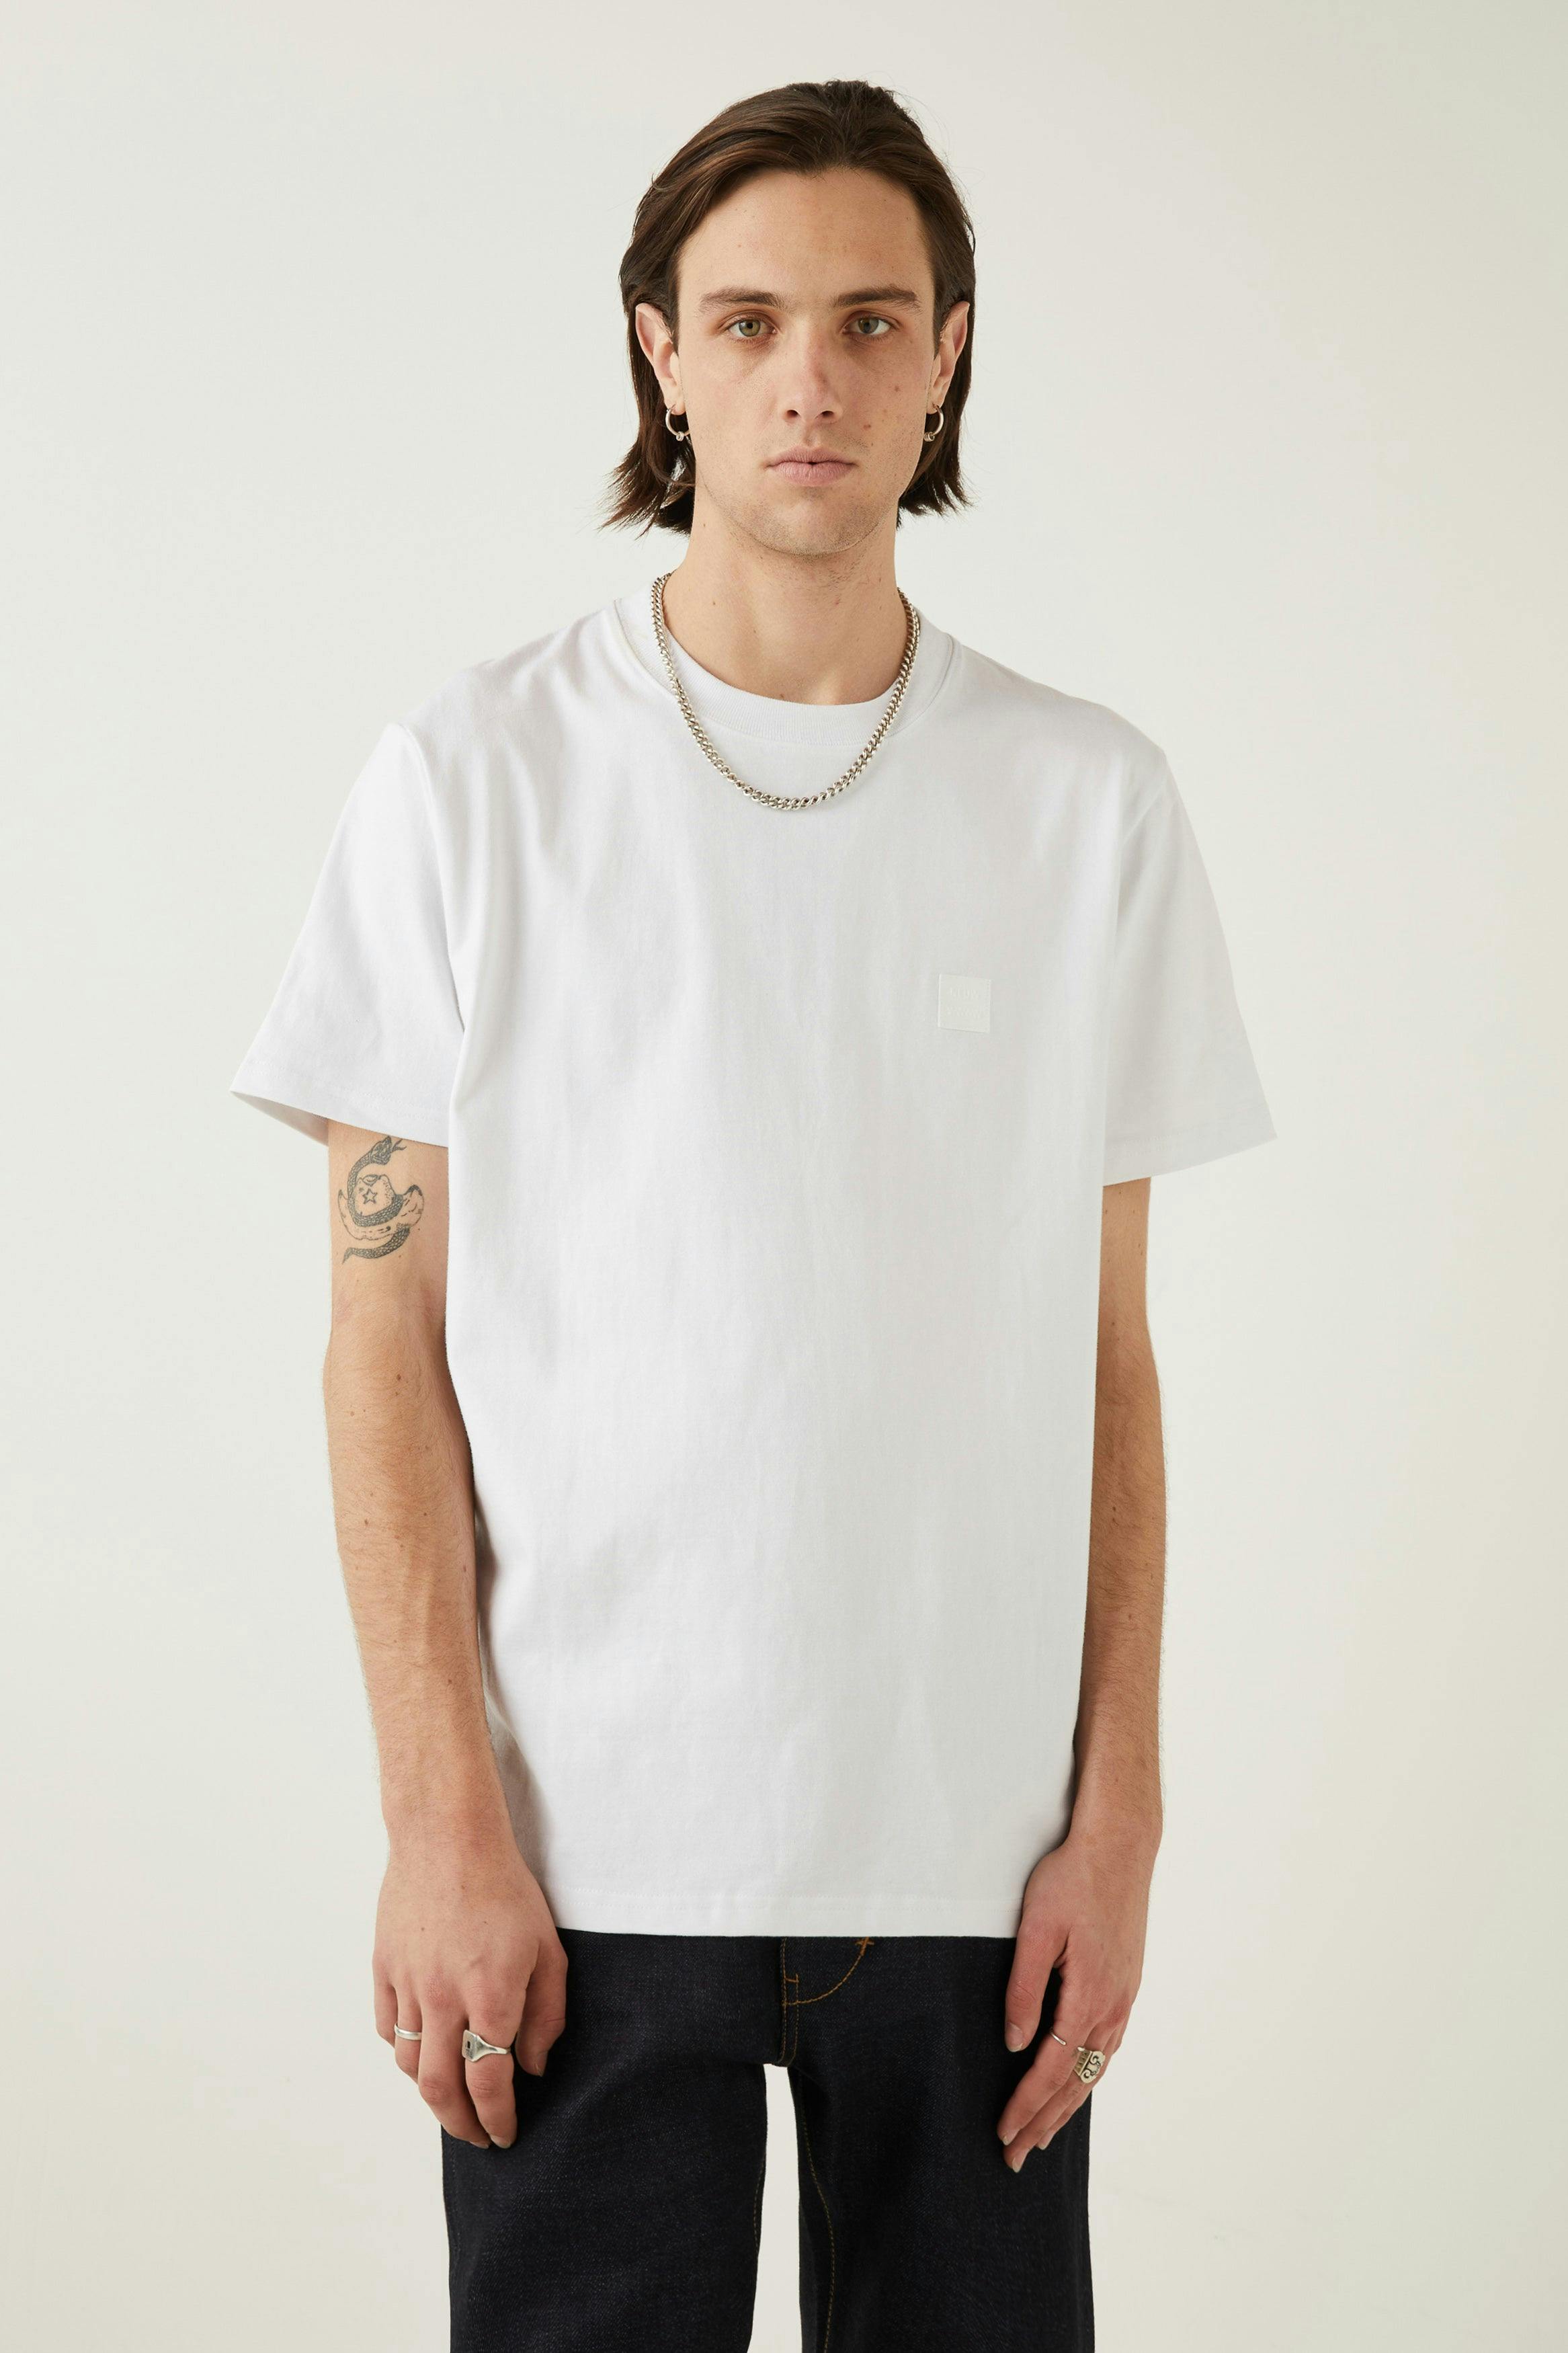 Neuw Premium Tee - White Neuw oversized white mens-t-shirt 